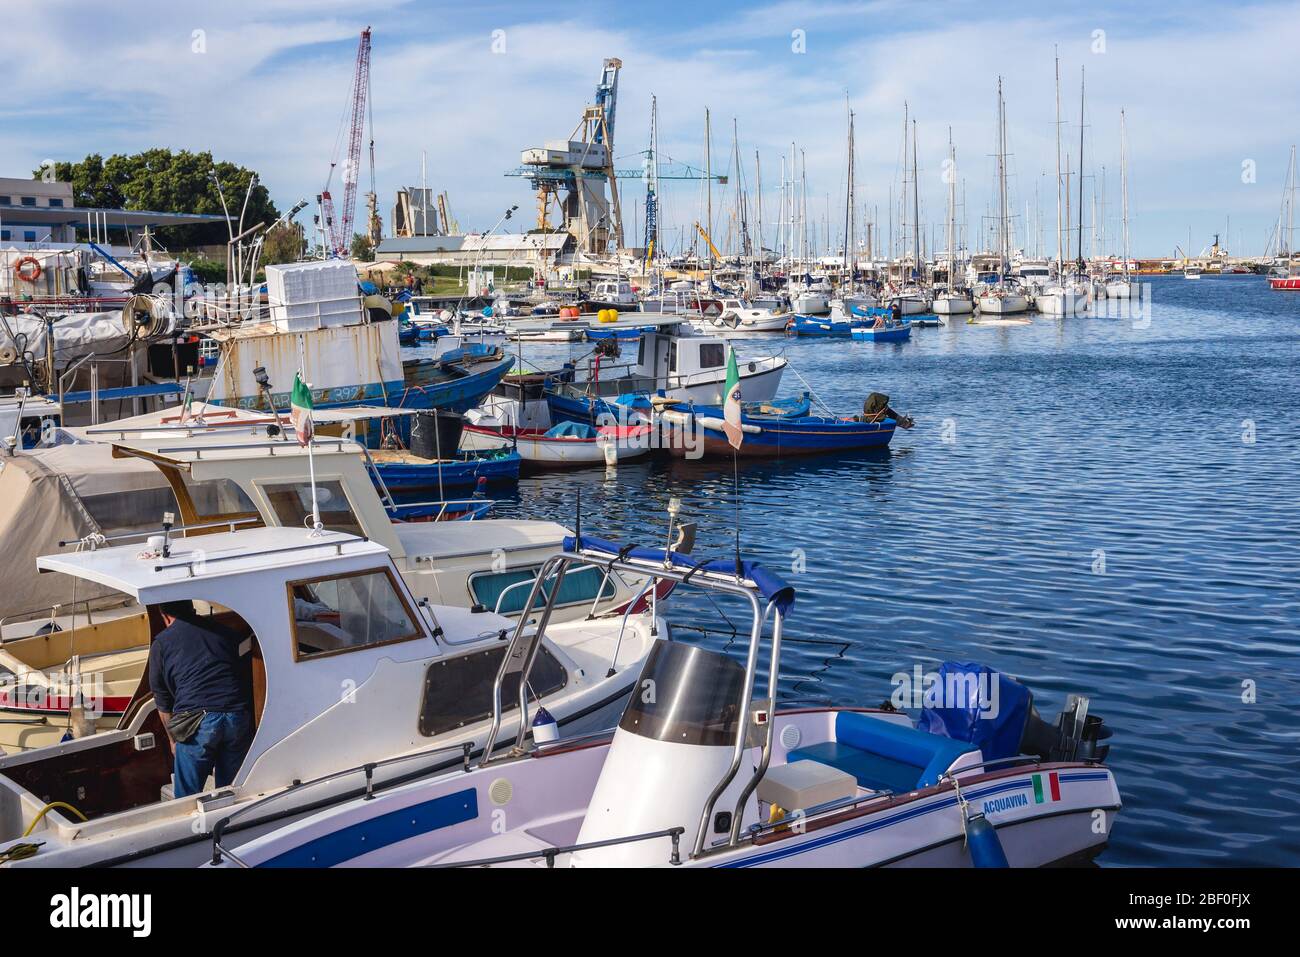 Bateaux de pêche dans la région de la Cala, port de Palerme ville du sud de l'Italie, capitale de la région autonome de Sicile Banque D'Images